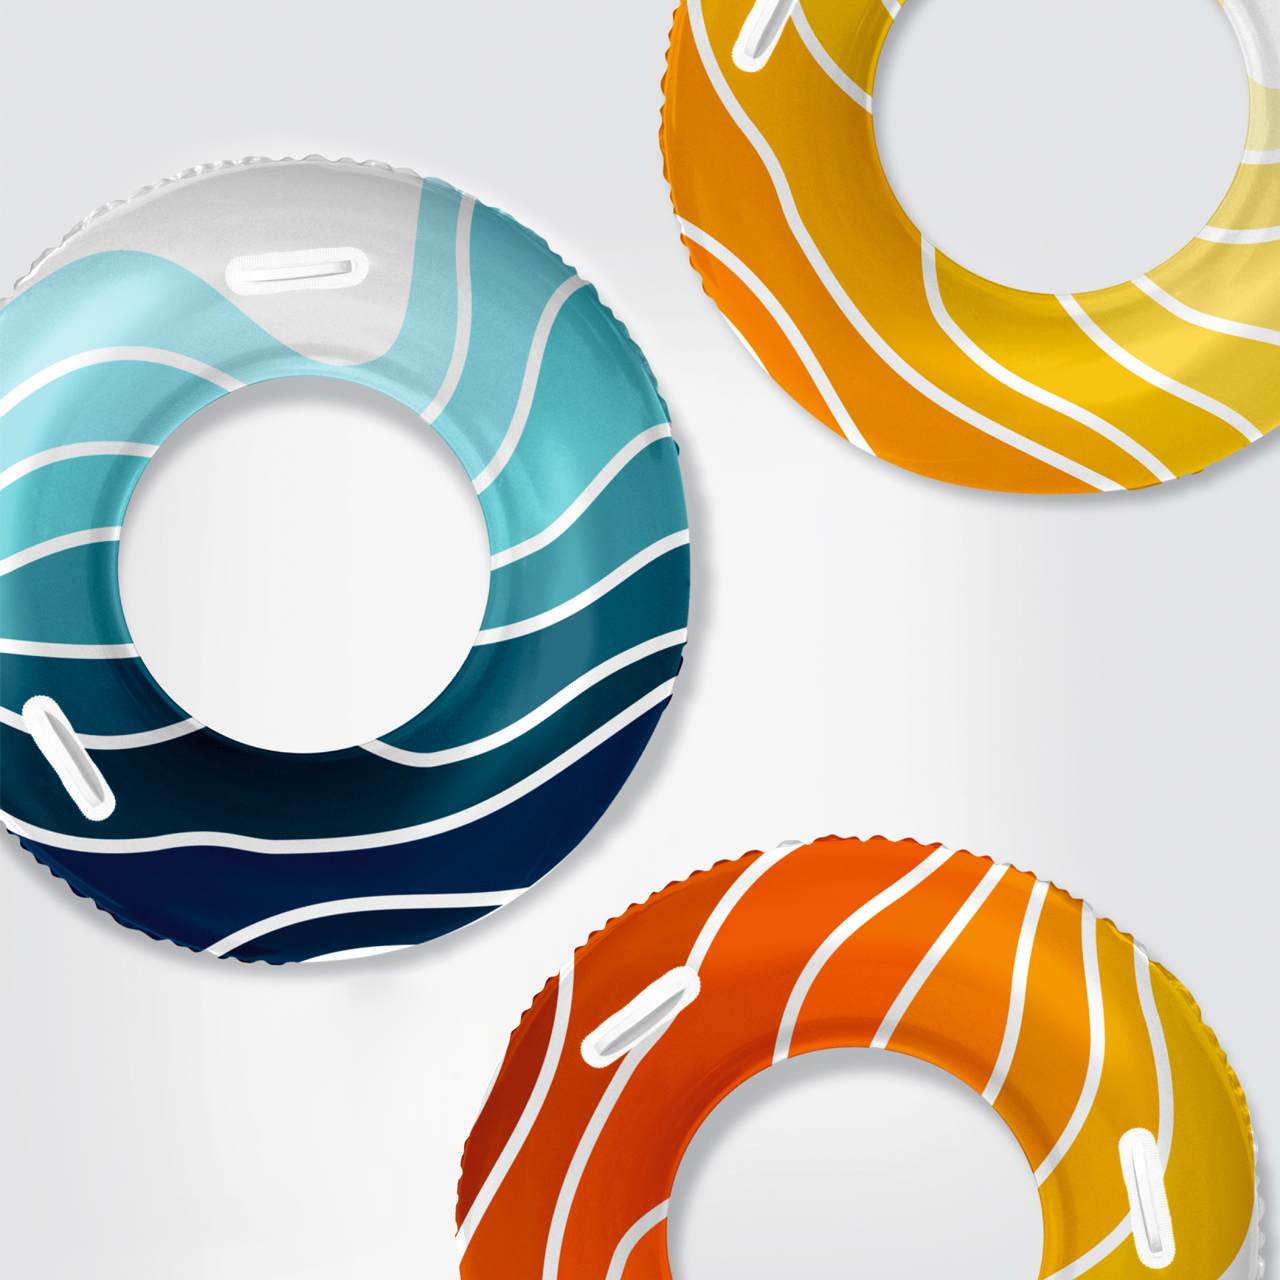 Фирменный паттерн туристического бренда Геленджика на плавательных кругах